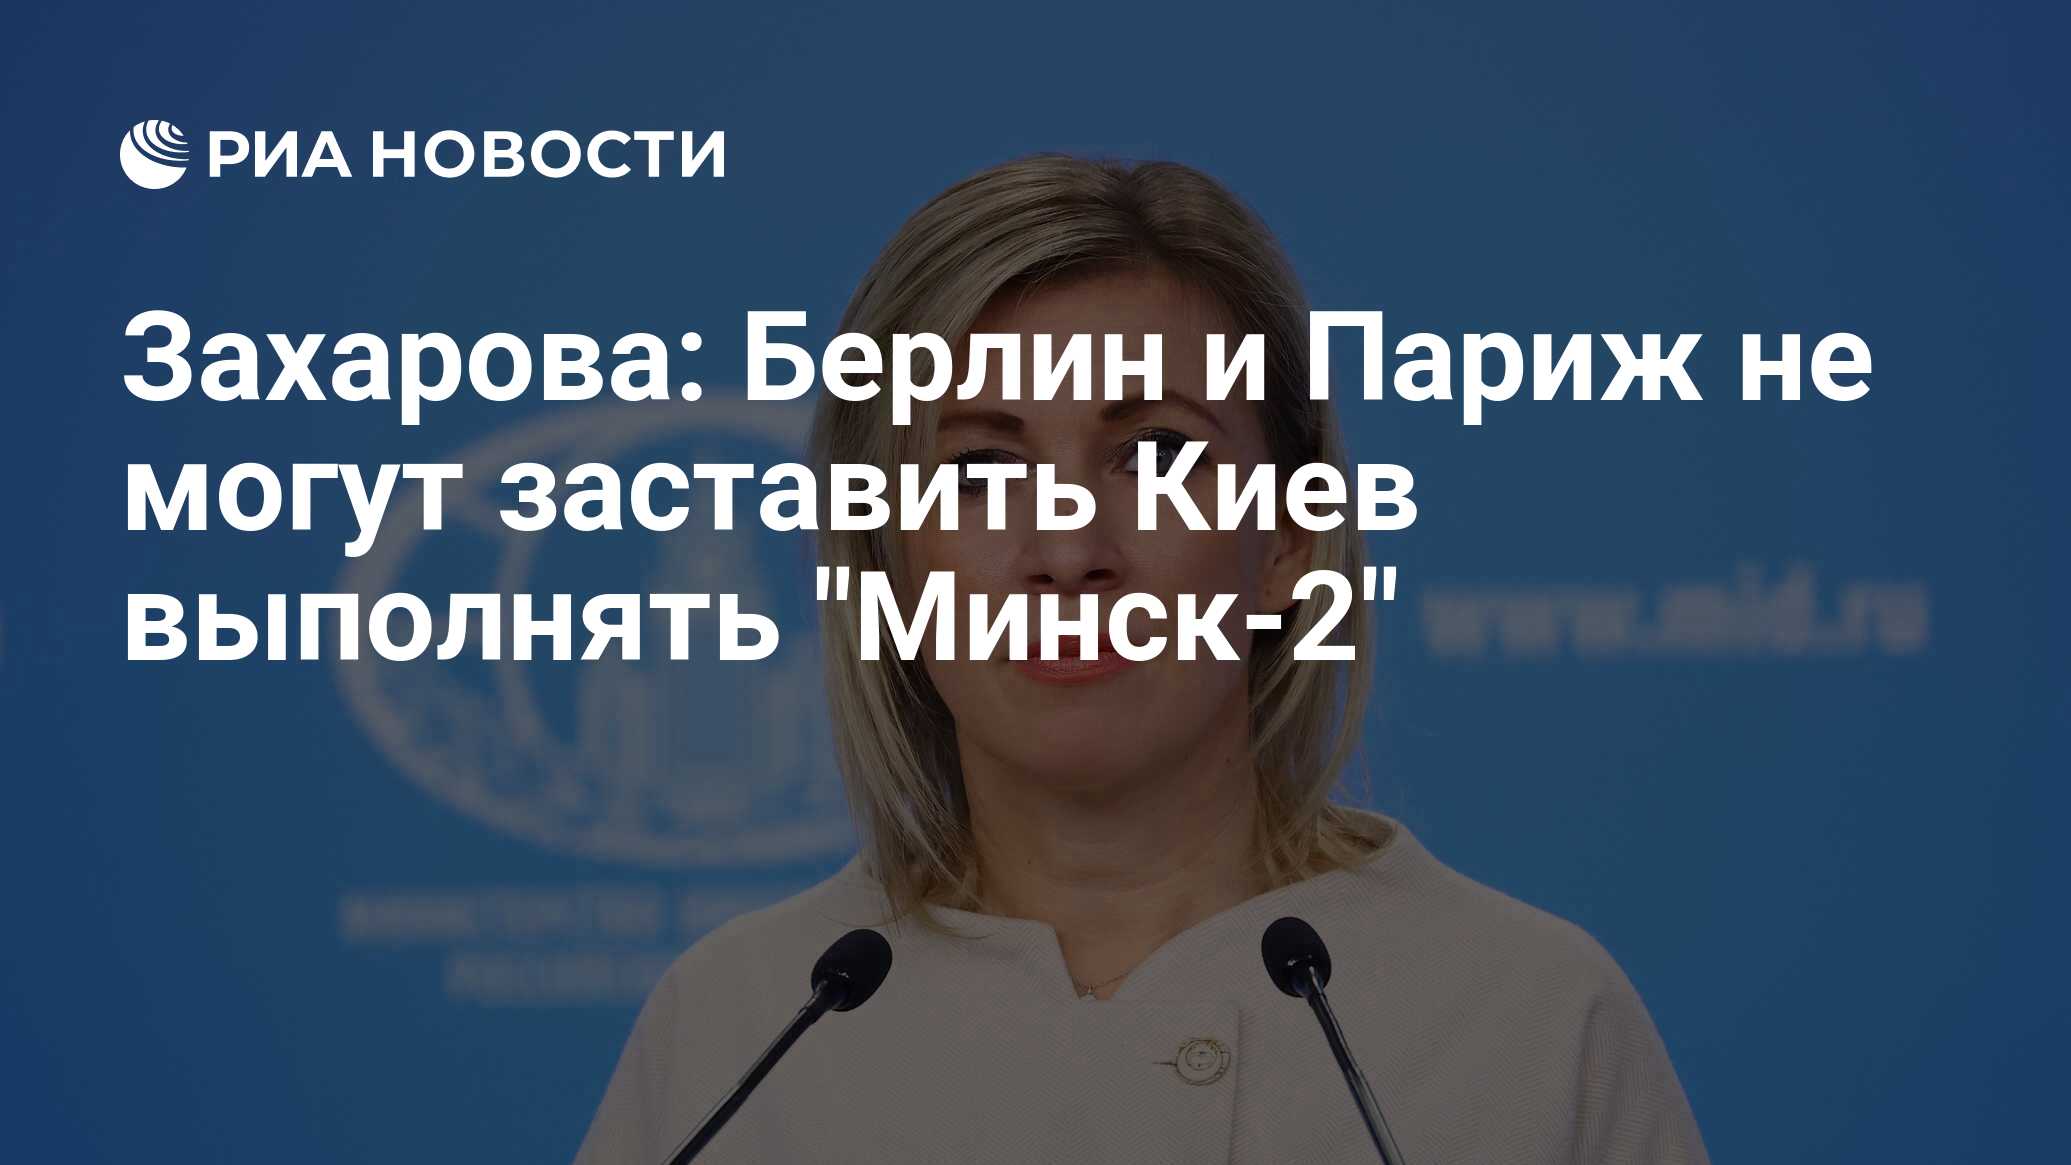 Захарова: Берлин и Париж не могут заставить Киев выполнять "Минск-2"